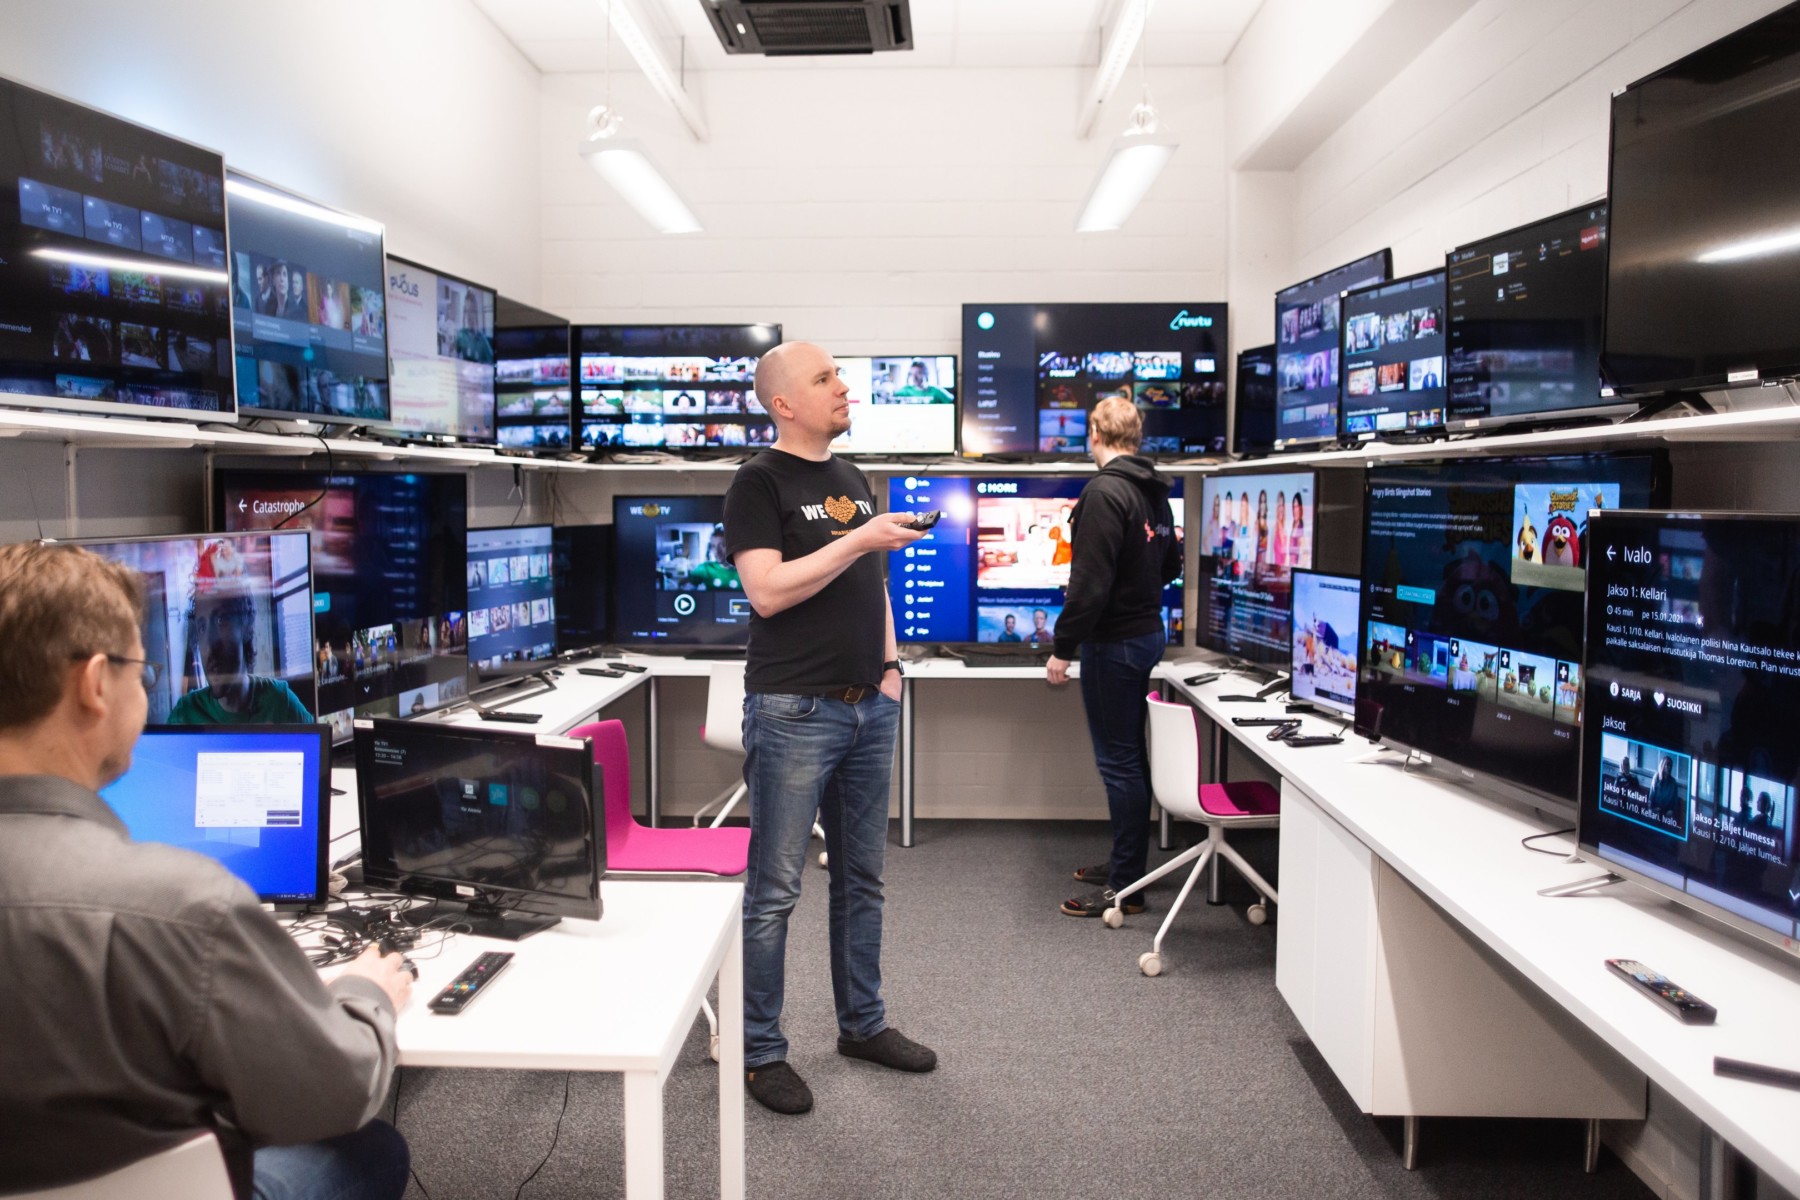 Mehrere Männer arbeiten in einem Raum, in dem alle Wände von Regalen mit verschiedenen Fernsehbildschirmen gesäumt sind.